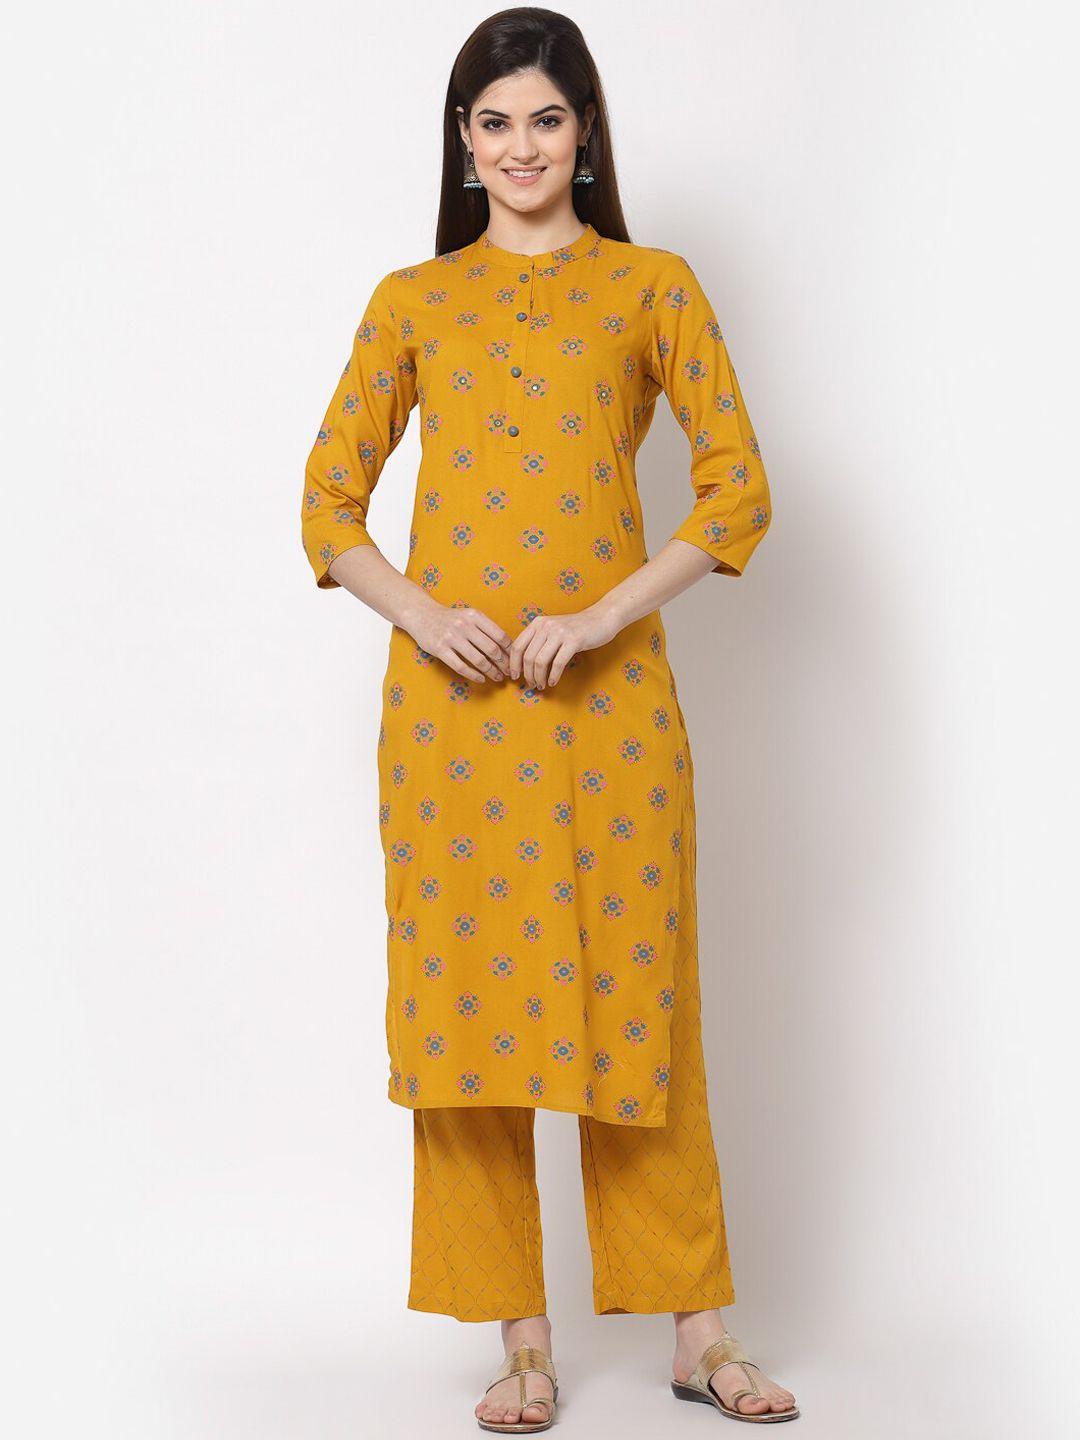 kbz women yellow ethnic motifs printed cotton kurta with palazzos